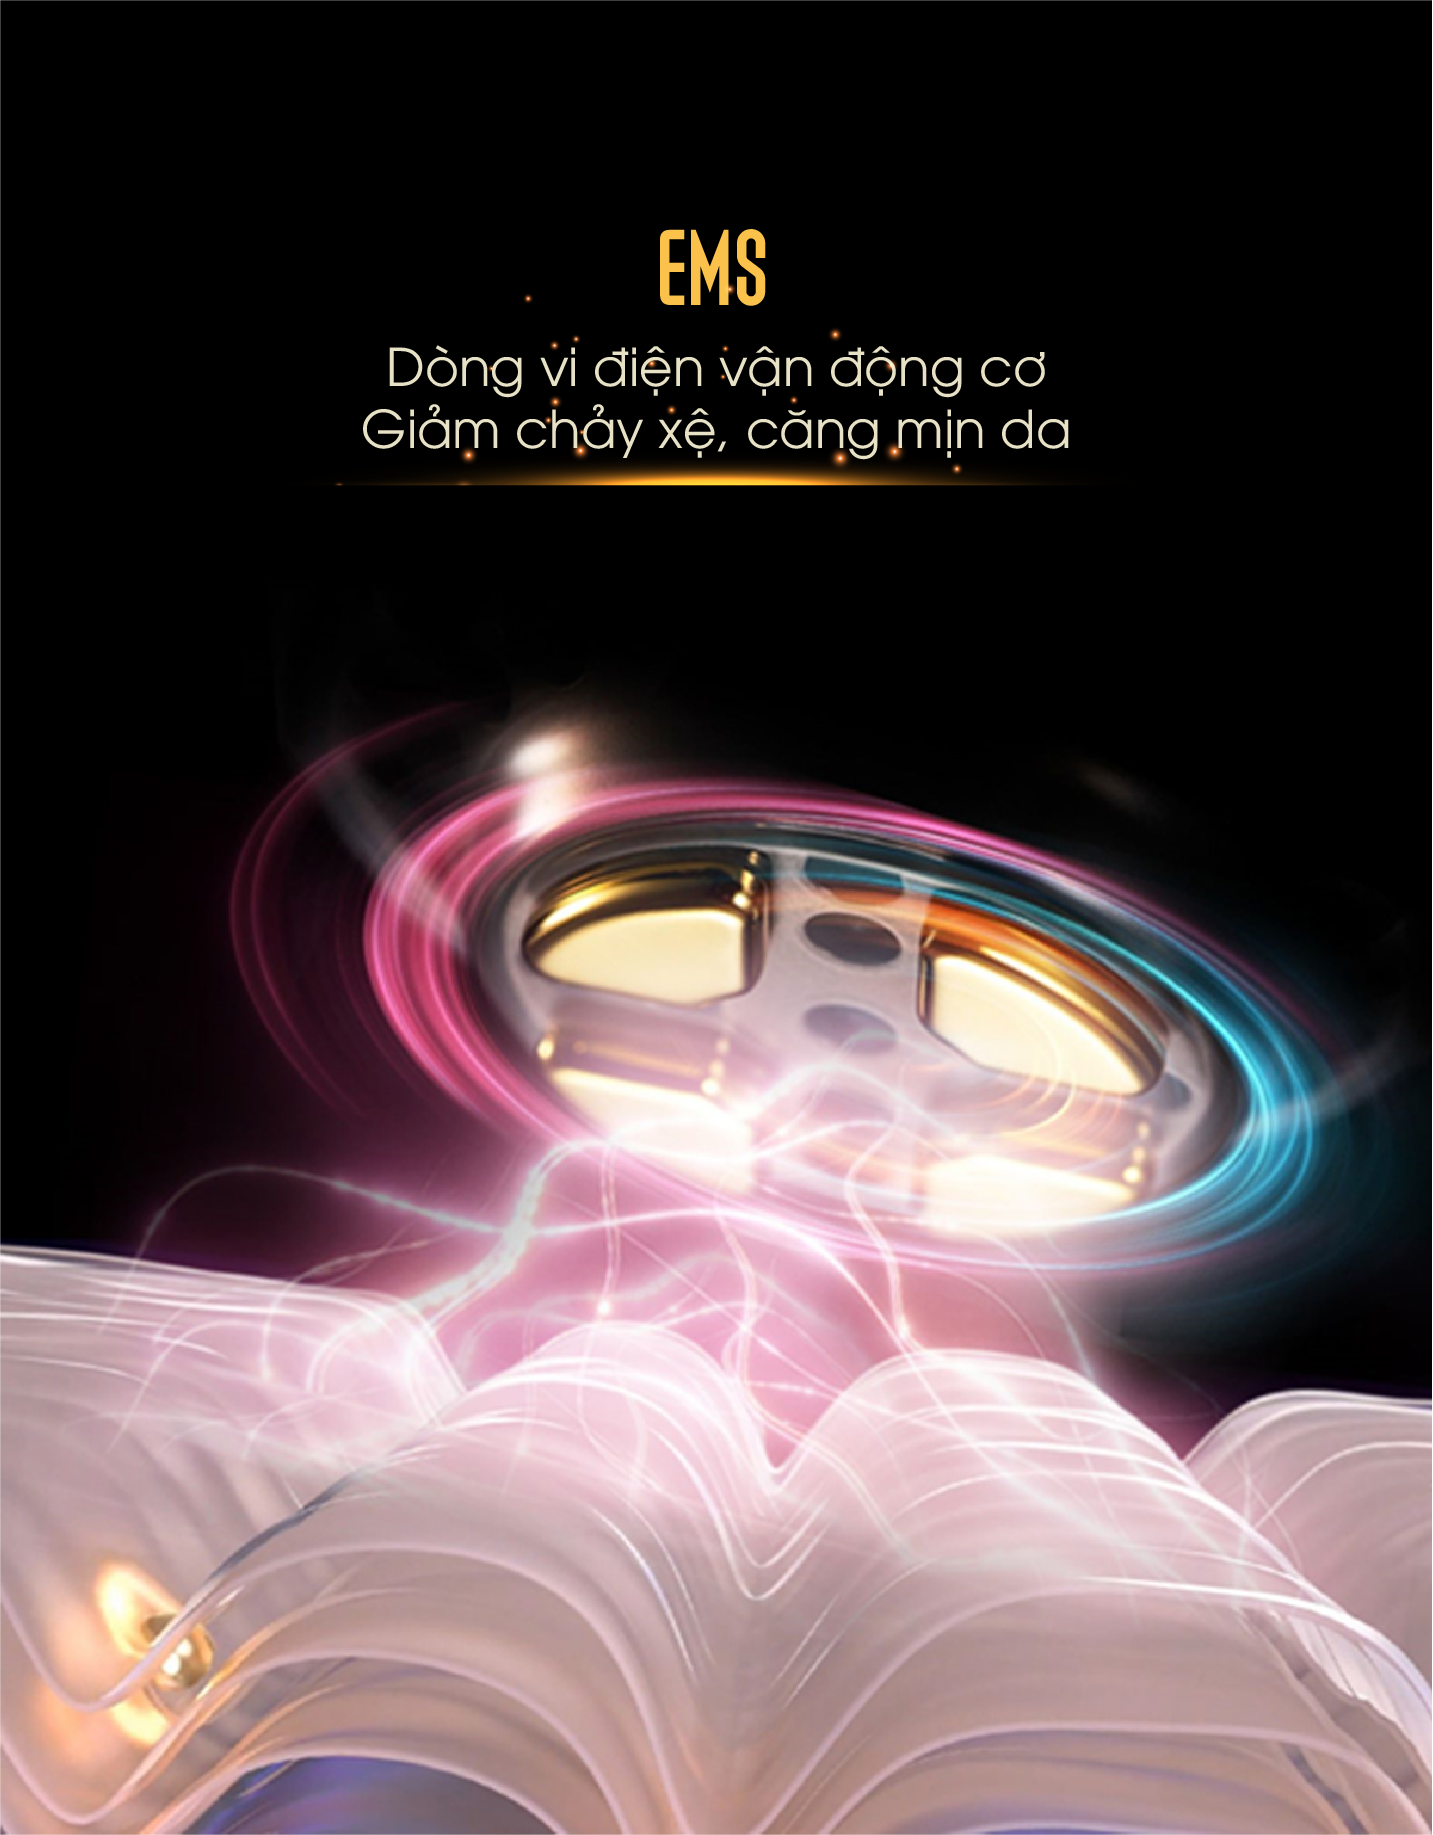 Tìm hiểu công nghệ EMS là gì? - Artistic&Co.